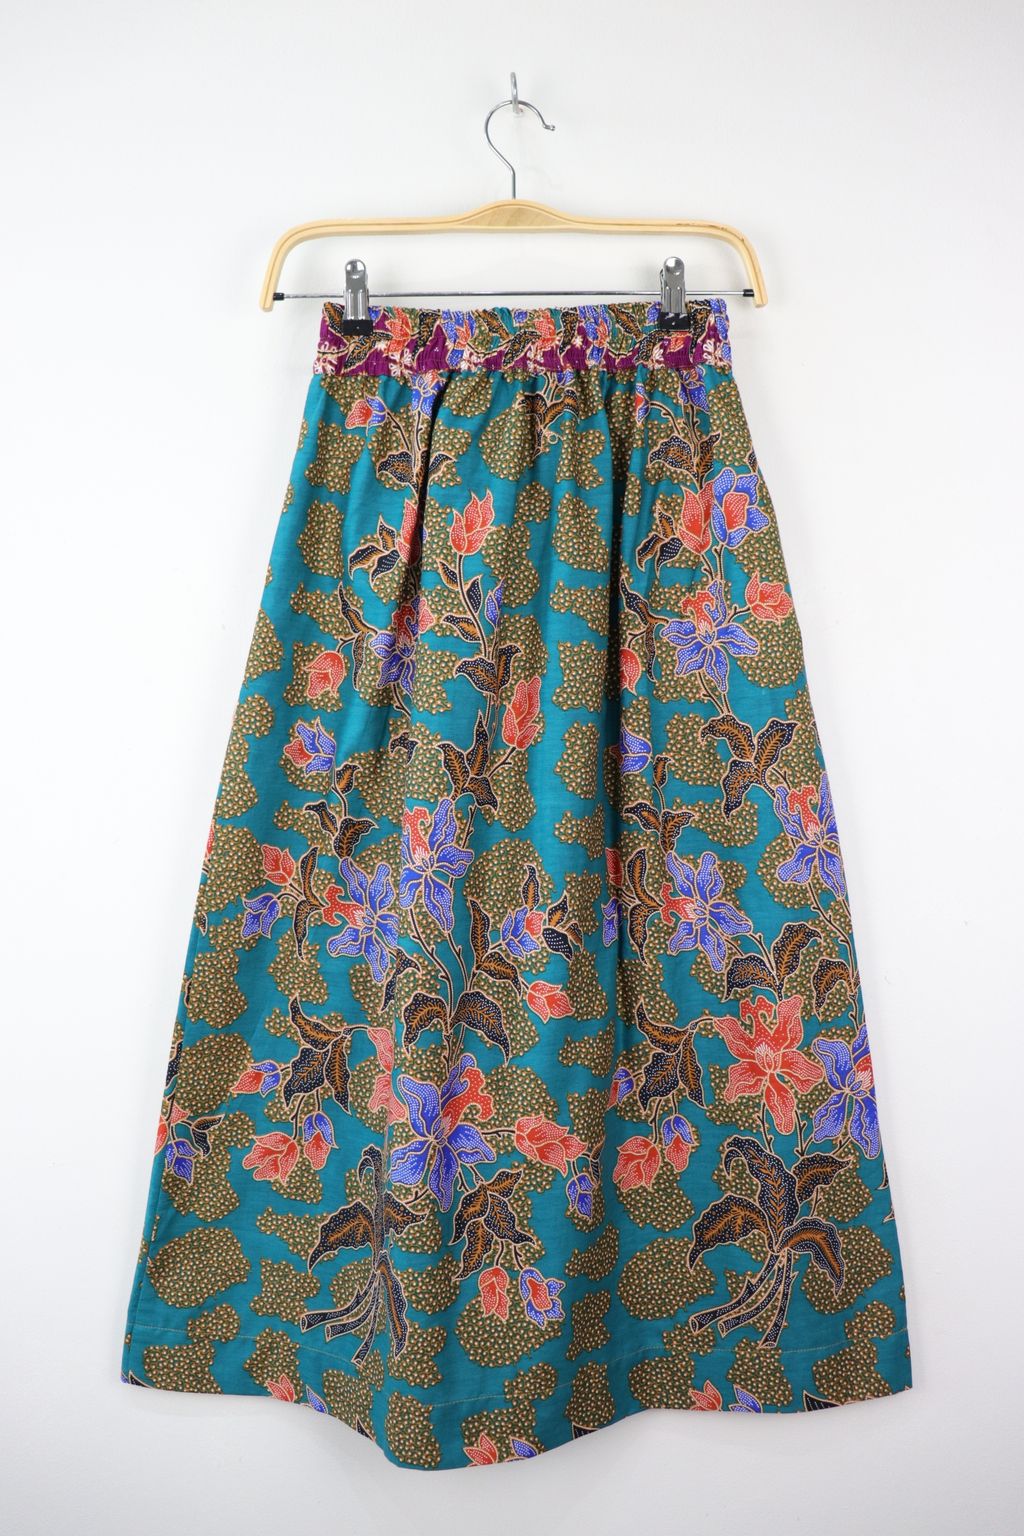 batik-maxi-skirt-228.JPG